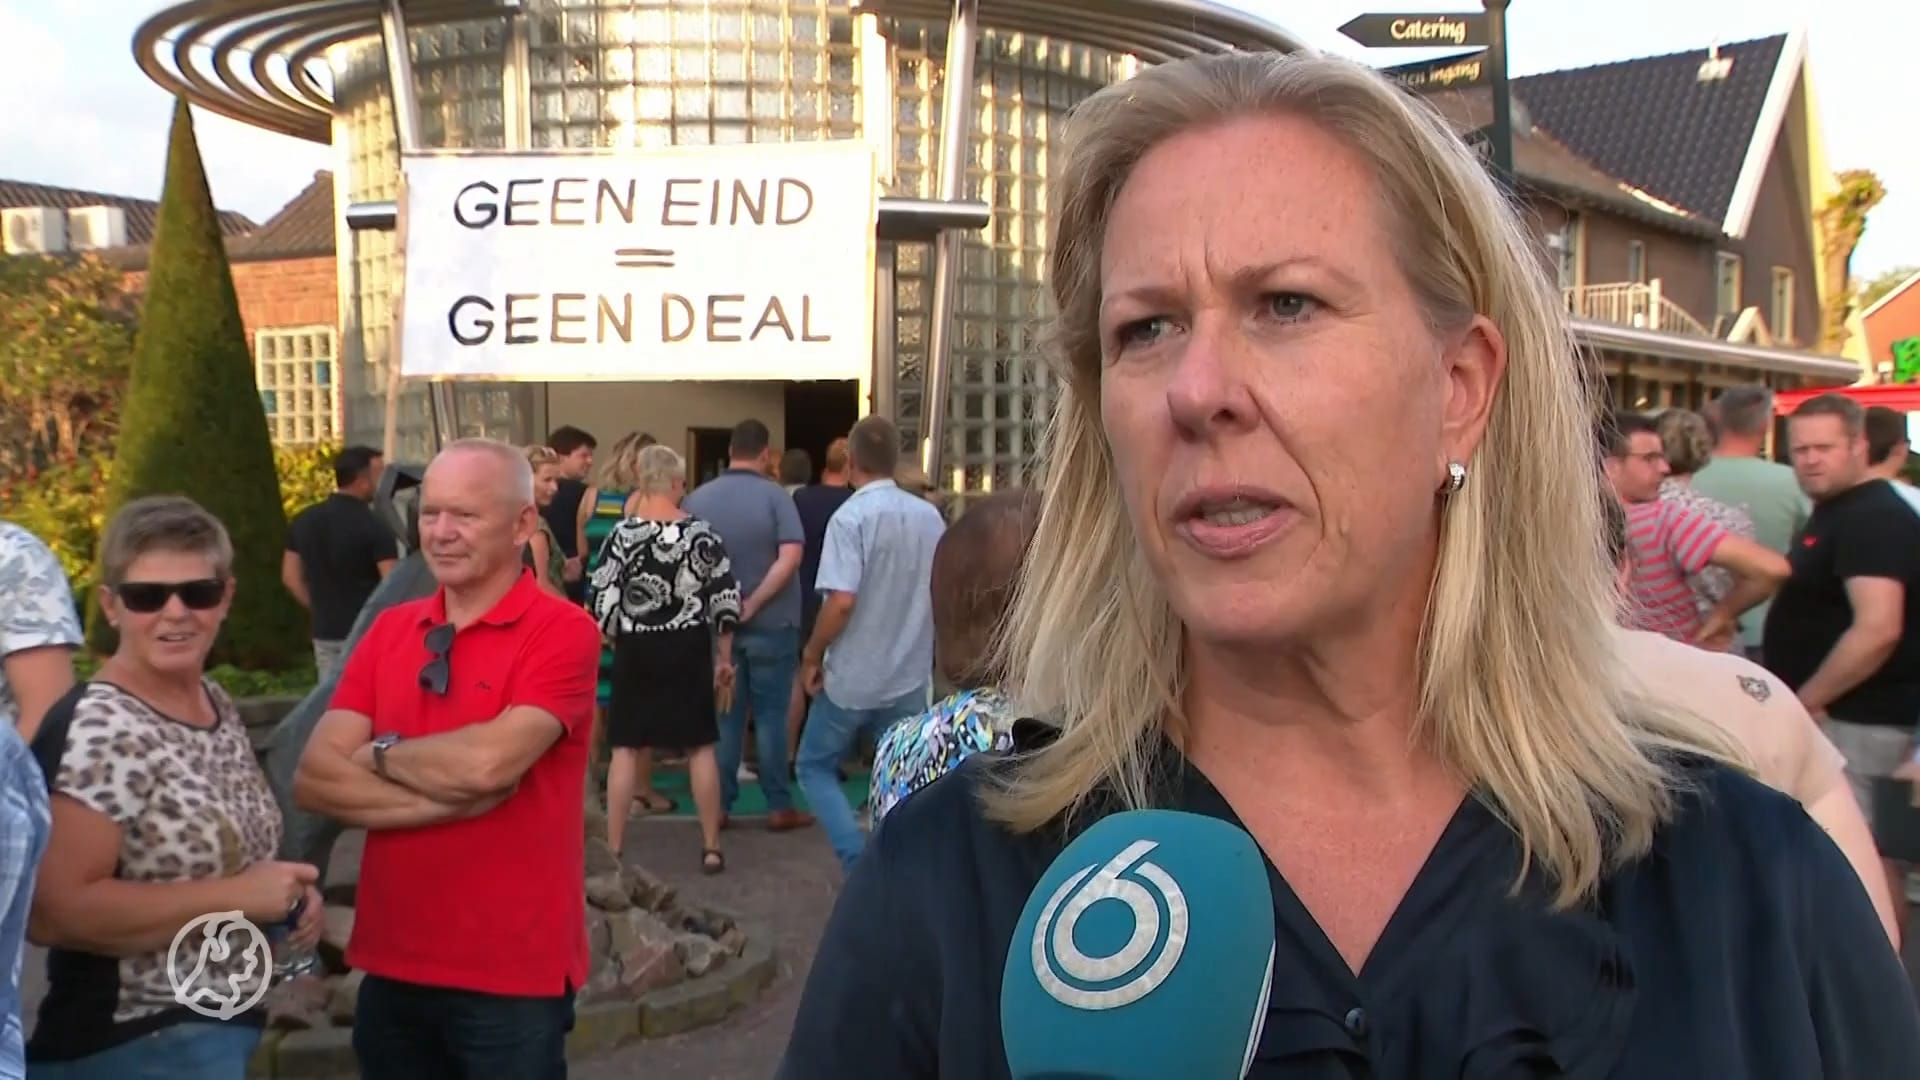 Bewoners Albergen verliezen vertrouwen na bijeenkomst over 'asielhotel': 'We zijn geen stap verder'